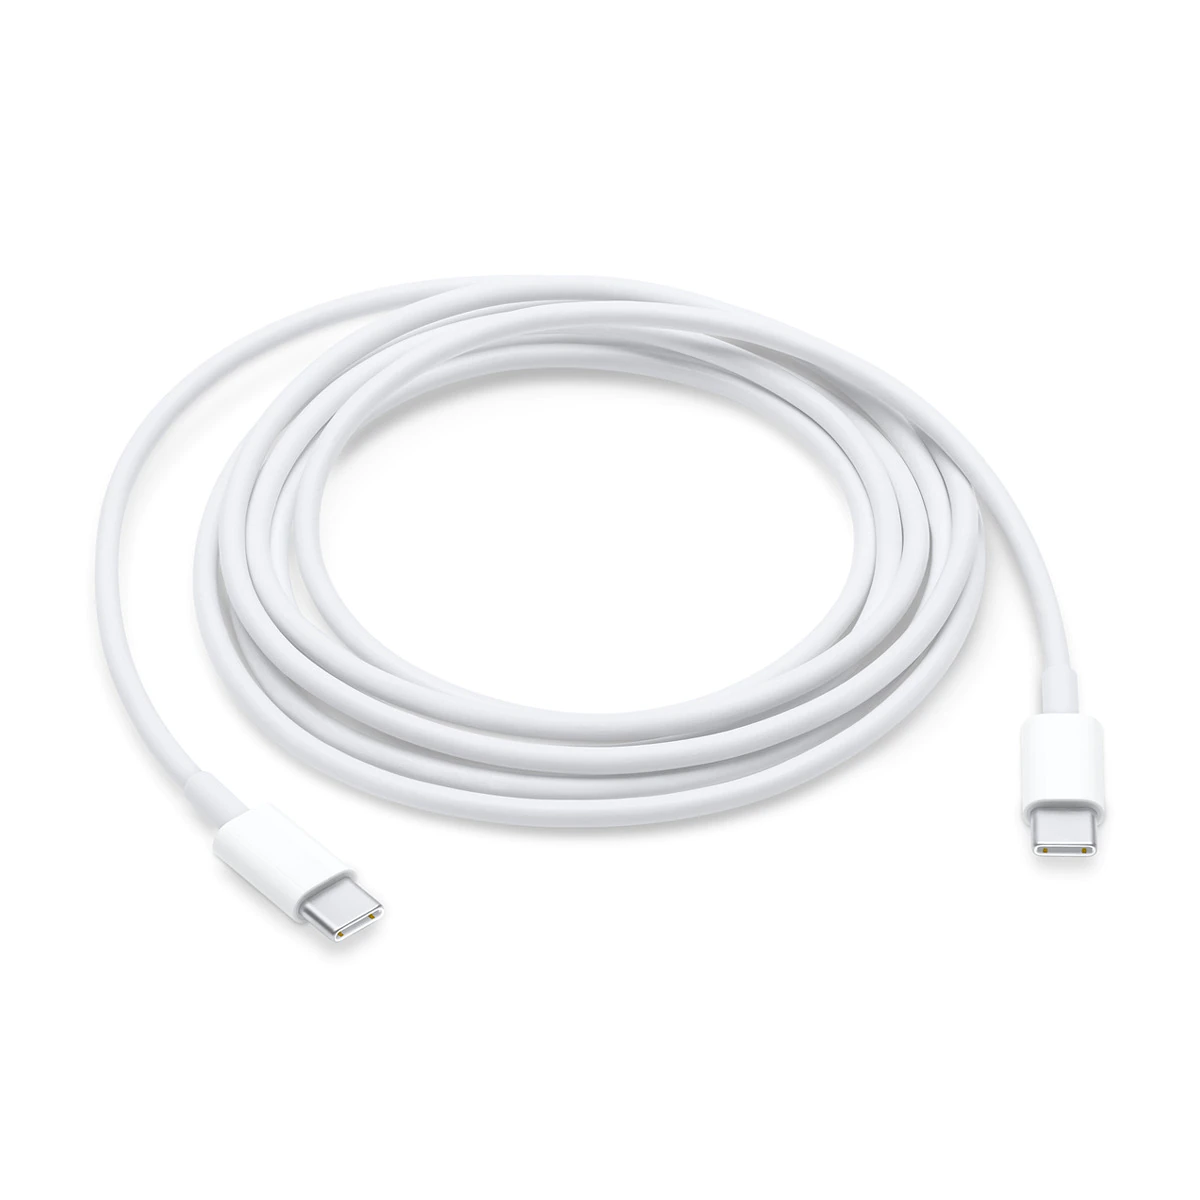 Cable de carga Apple de USB-C a USB-C de 2 metros